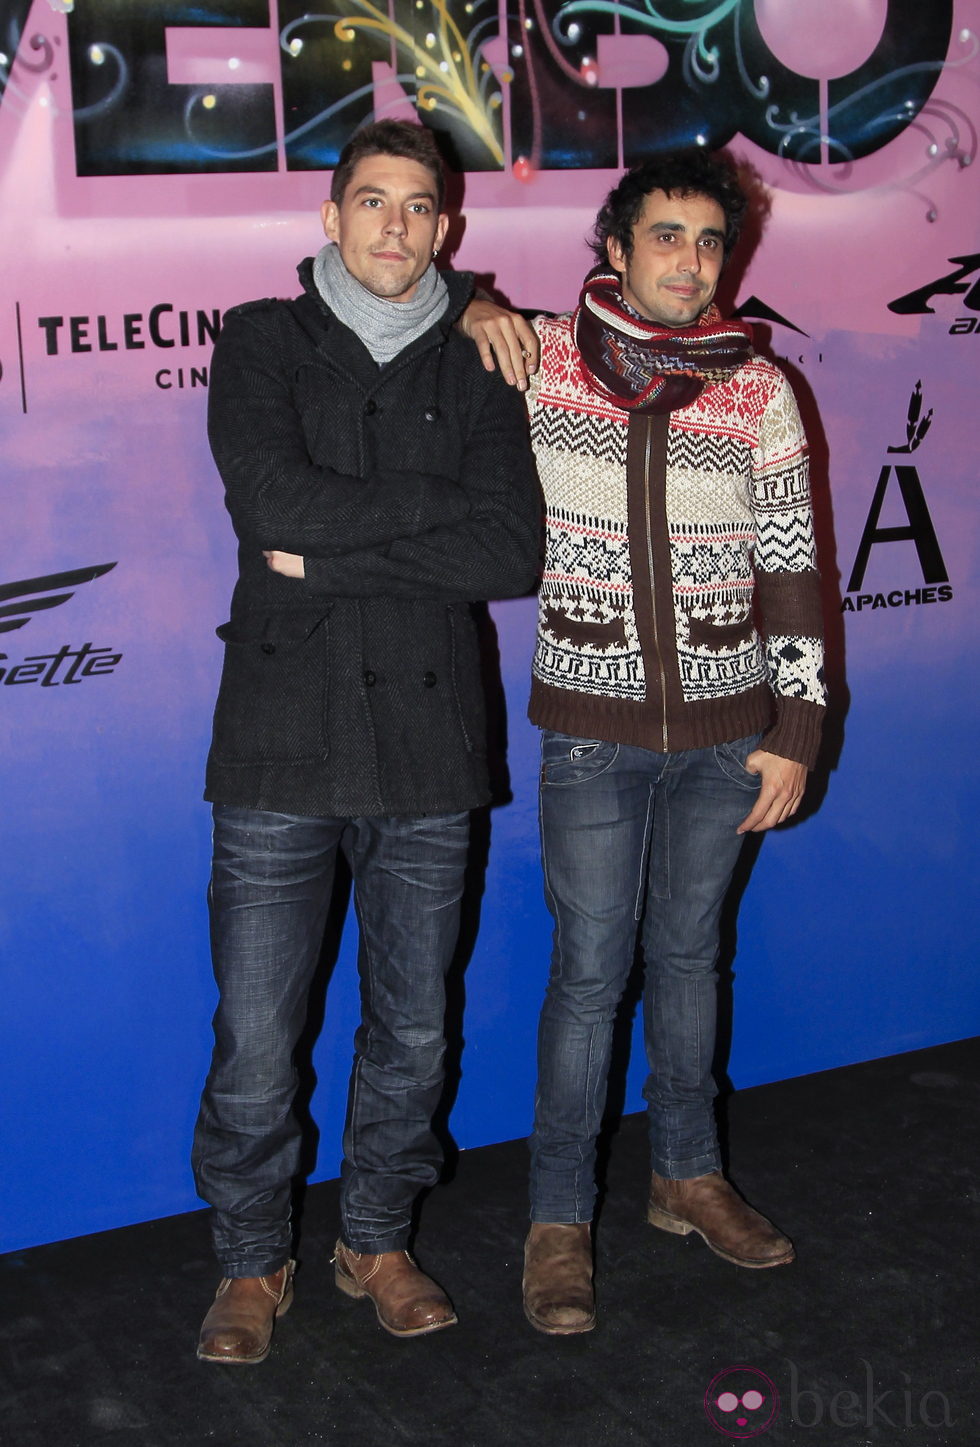 Adrián Lastra y Canco Rodríguez en el estreno de 'Verbo' en Madrid